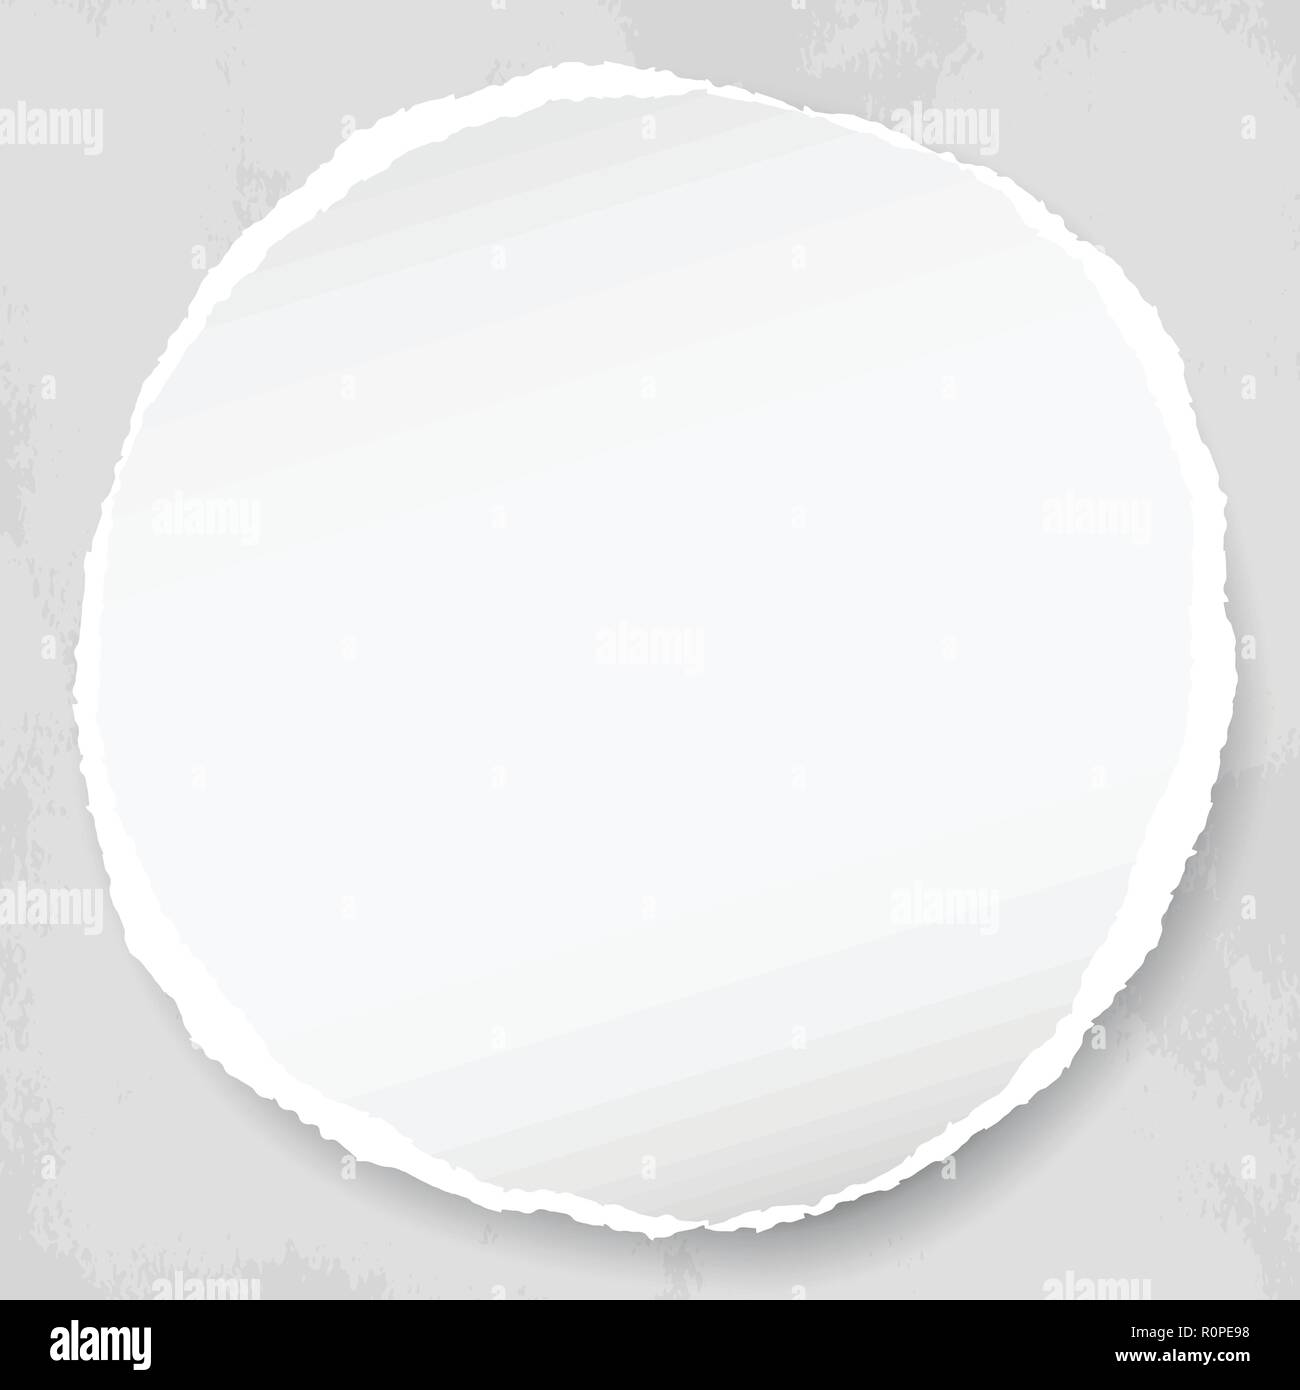 White round di carta strappata con ombra per testo o messaggio su sfondo grigio chiaro. Illustrazione Vettoriale. Illustrazione Vettoriale